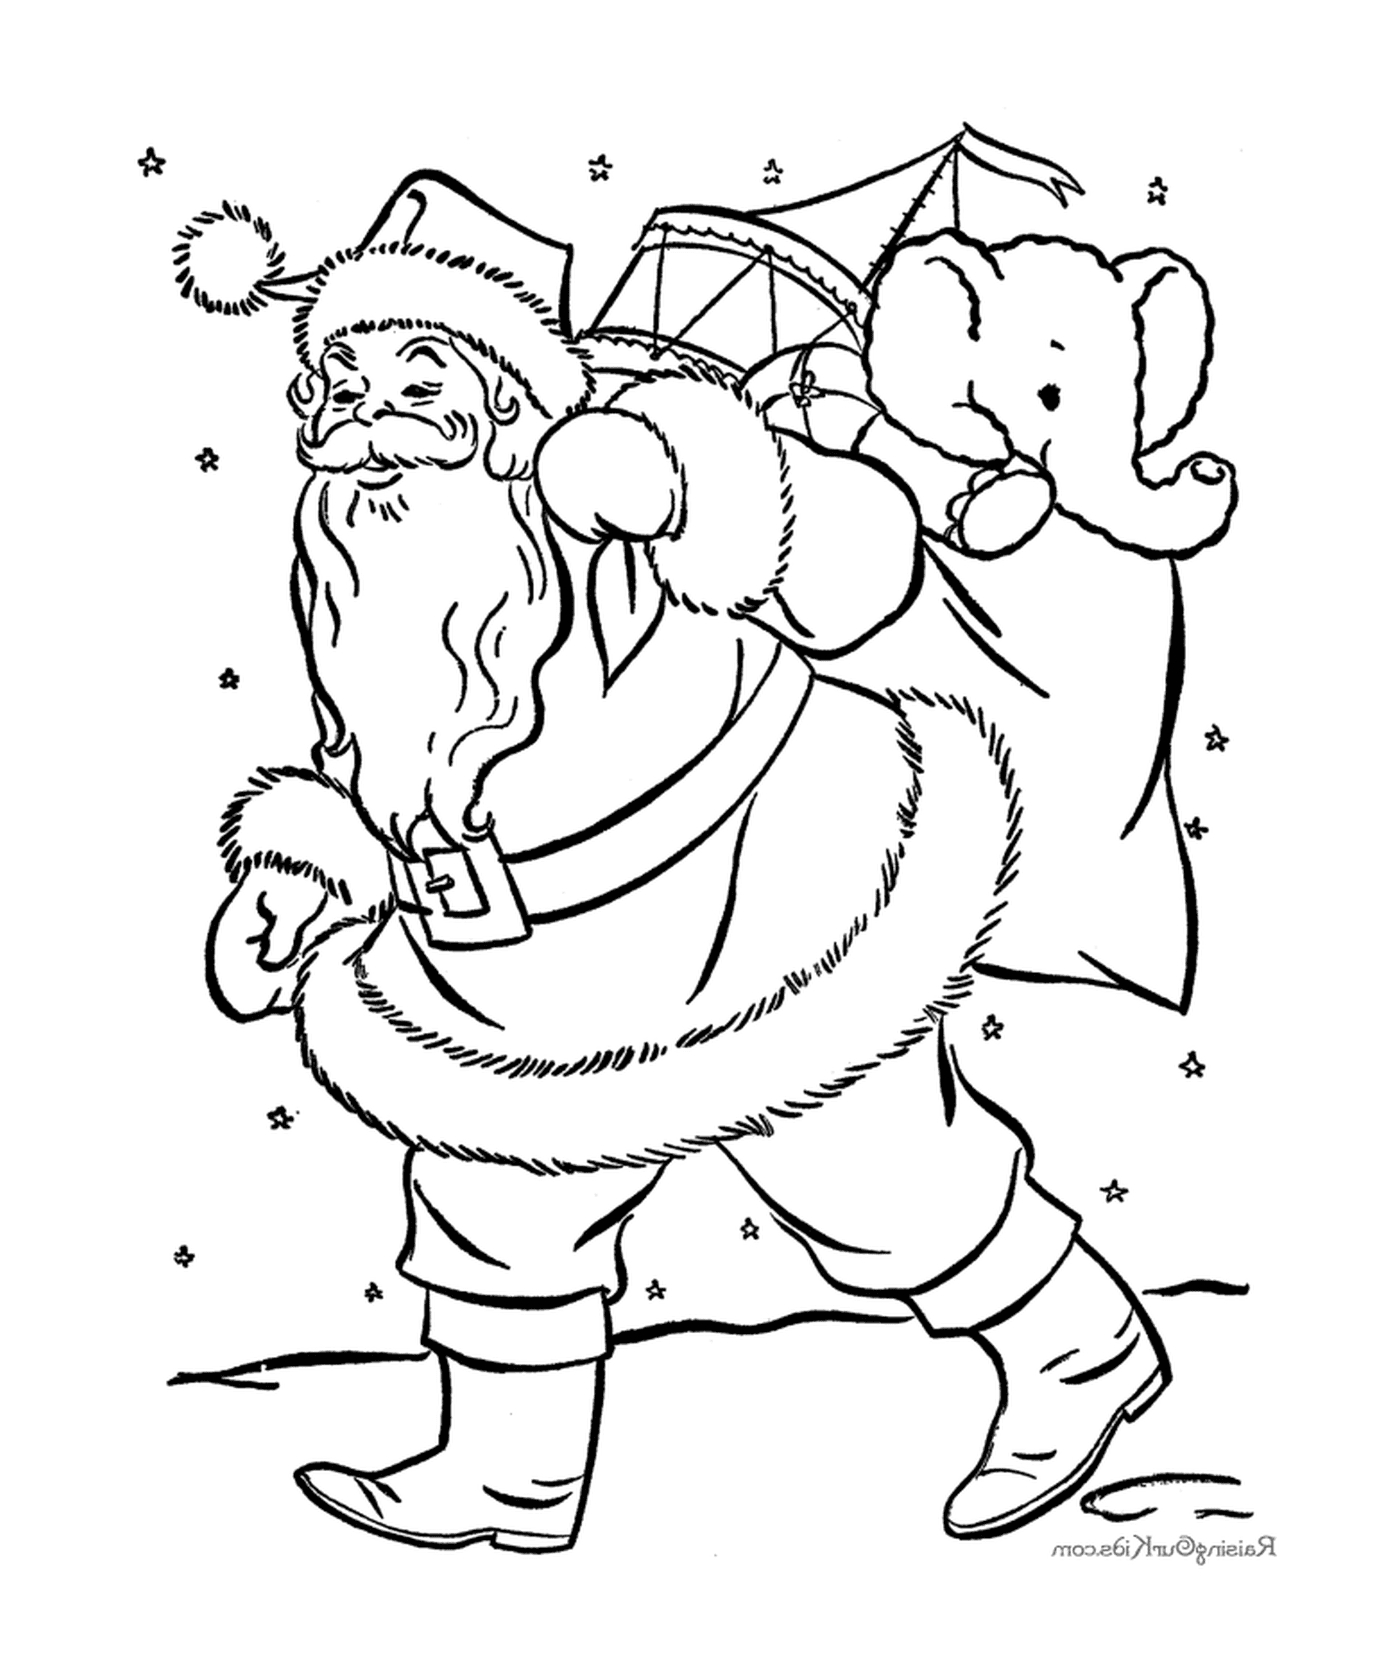  Santa trägt eine Tasche mit Spielzeug 